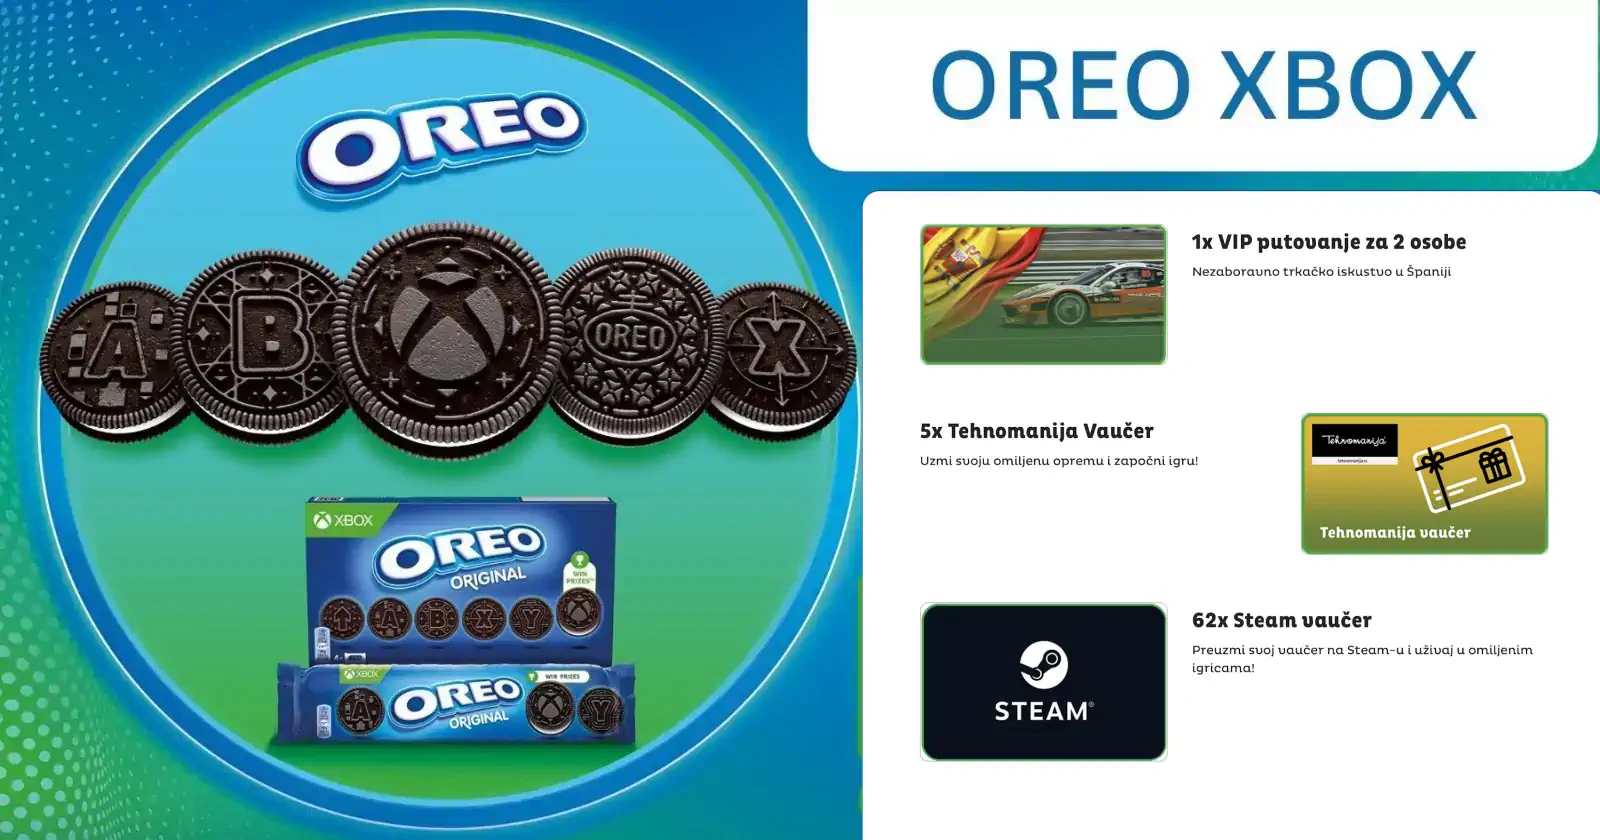 Oreo nagradna igra: Oreo i Xbox